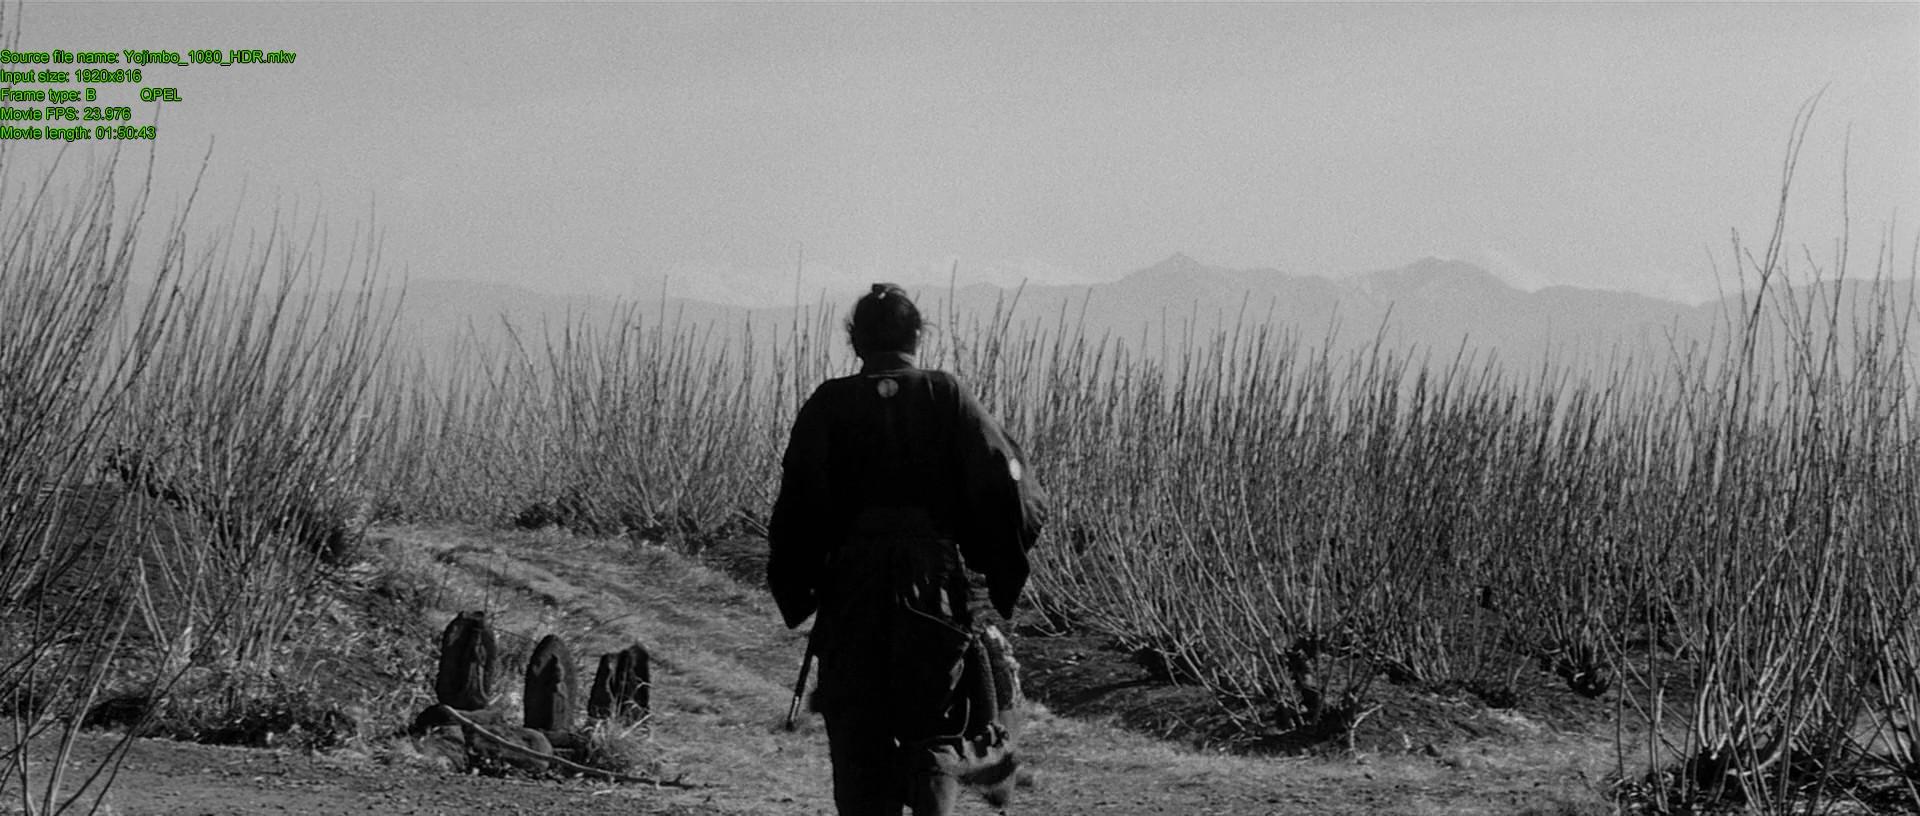 Кадр из фильма Телохранитель / Yojimbo (1961)